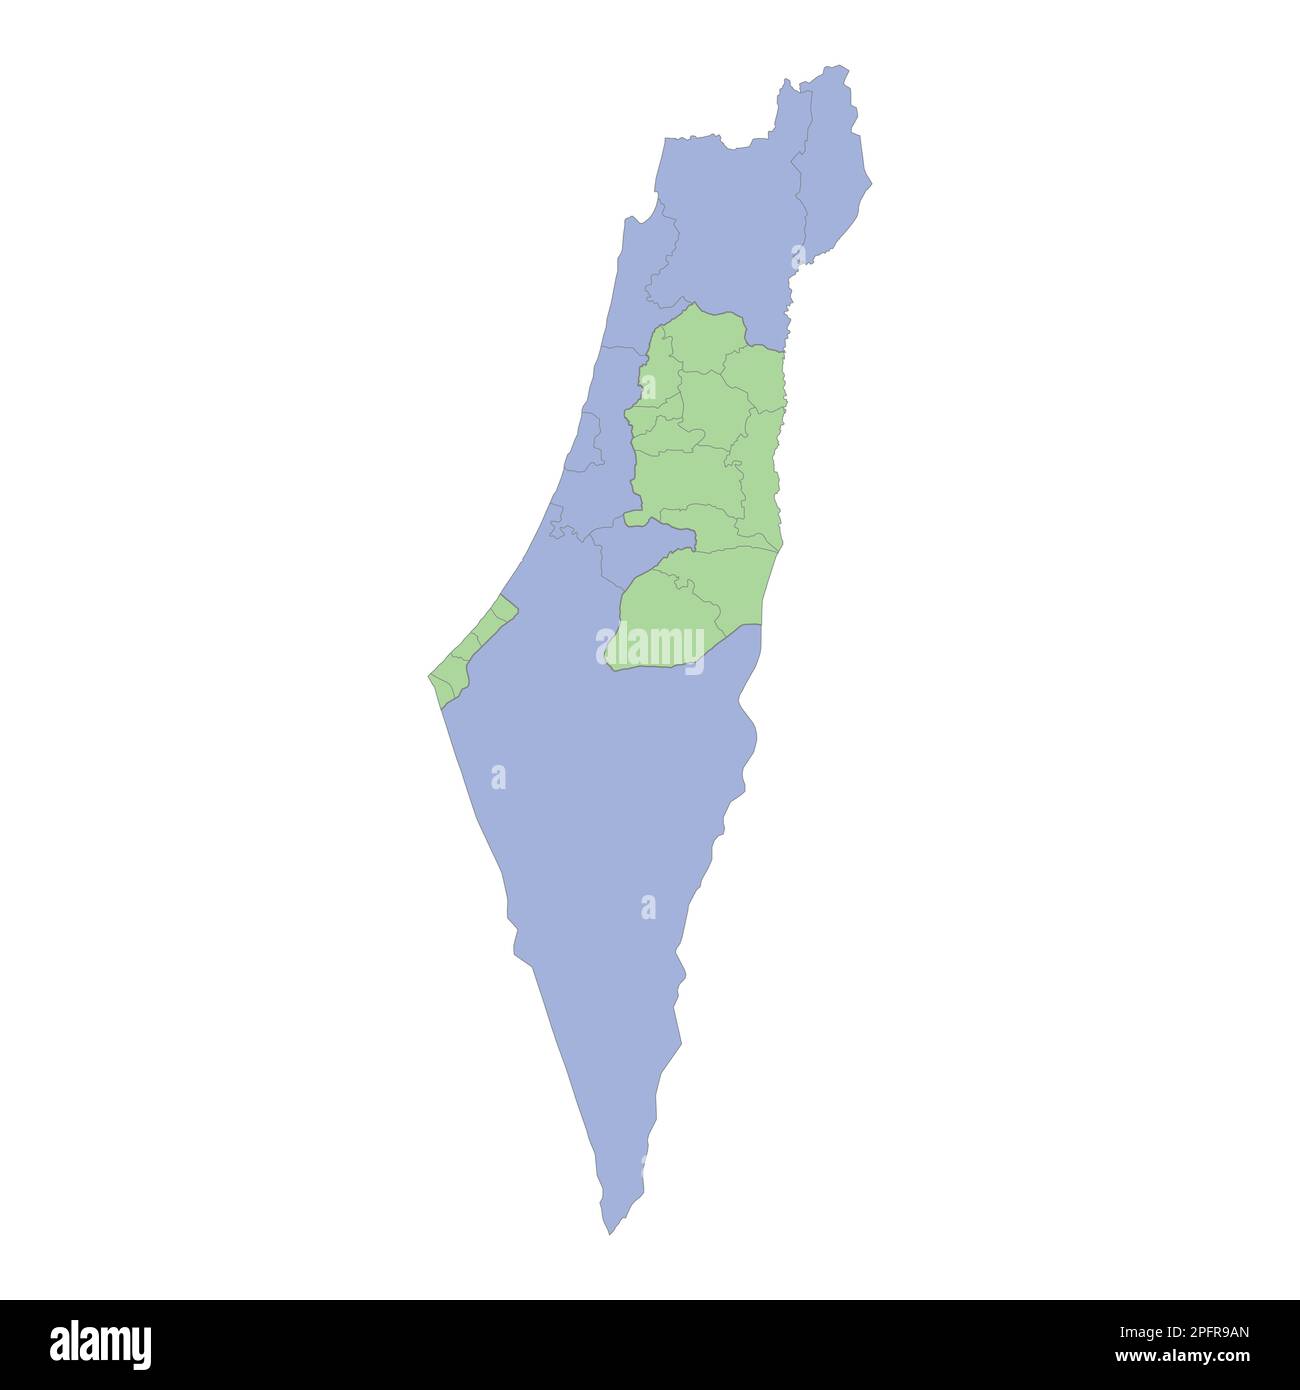 Mappa politica di alta qualità di Israele e Palestina con i confini delle regioni o province. Illustrazione vettoriale Illustrazione Vettoriale